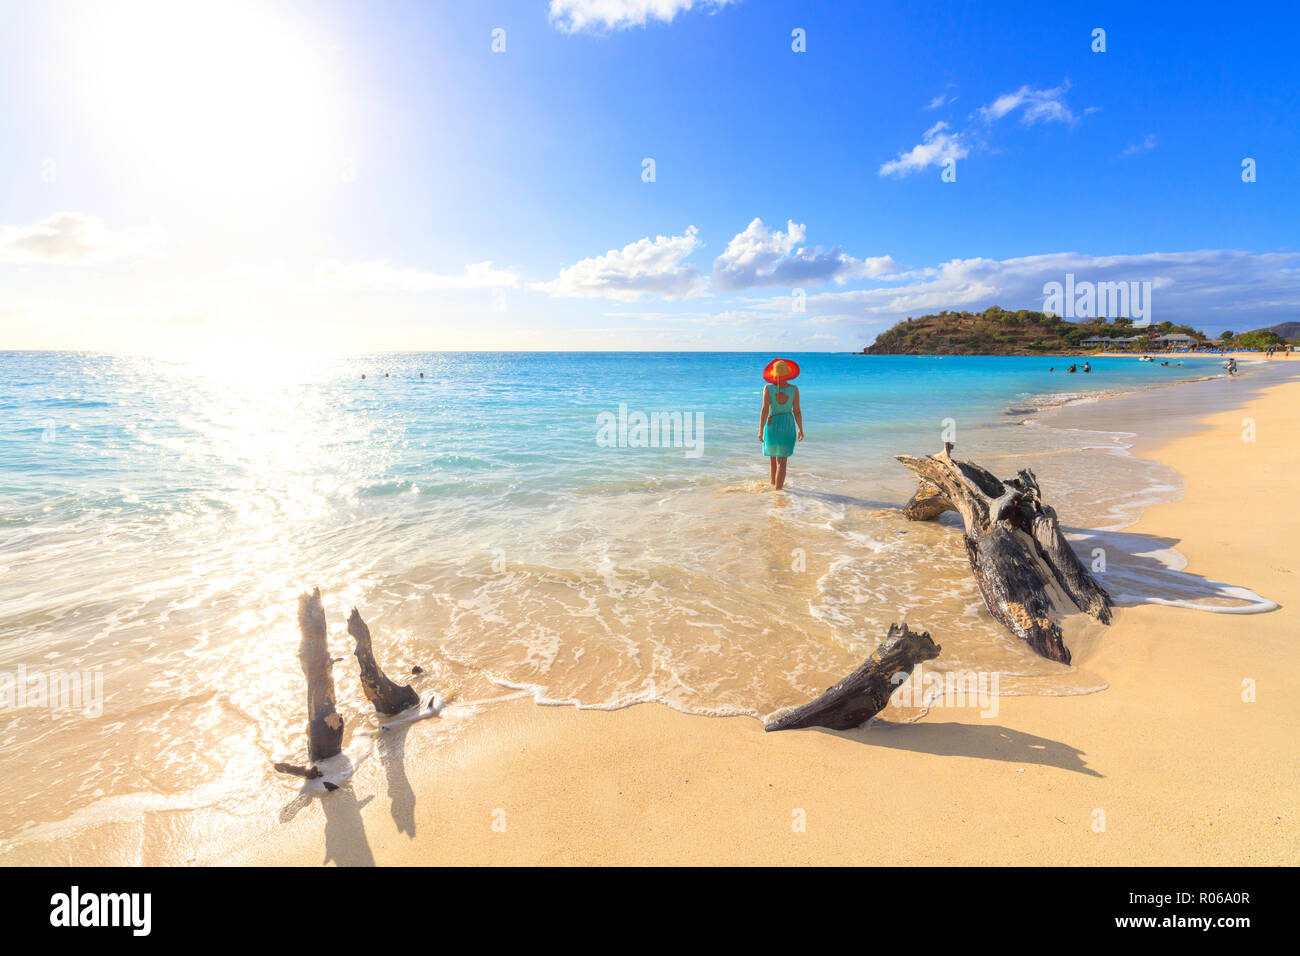 Vista posteriore della donna con cappello camminando sulla spiaggia Ffryes, Antigua Antigua e Barbuda, Isole Sottovento, West Indies, dei Caraibi e America centrale Foto Stock